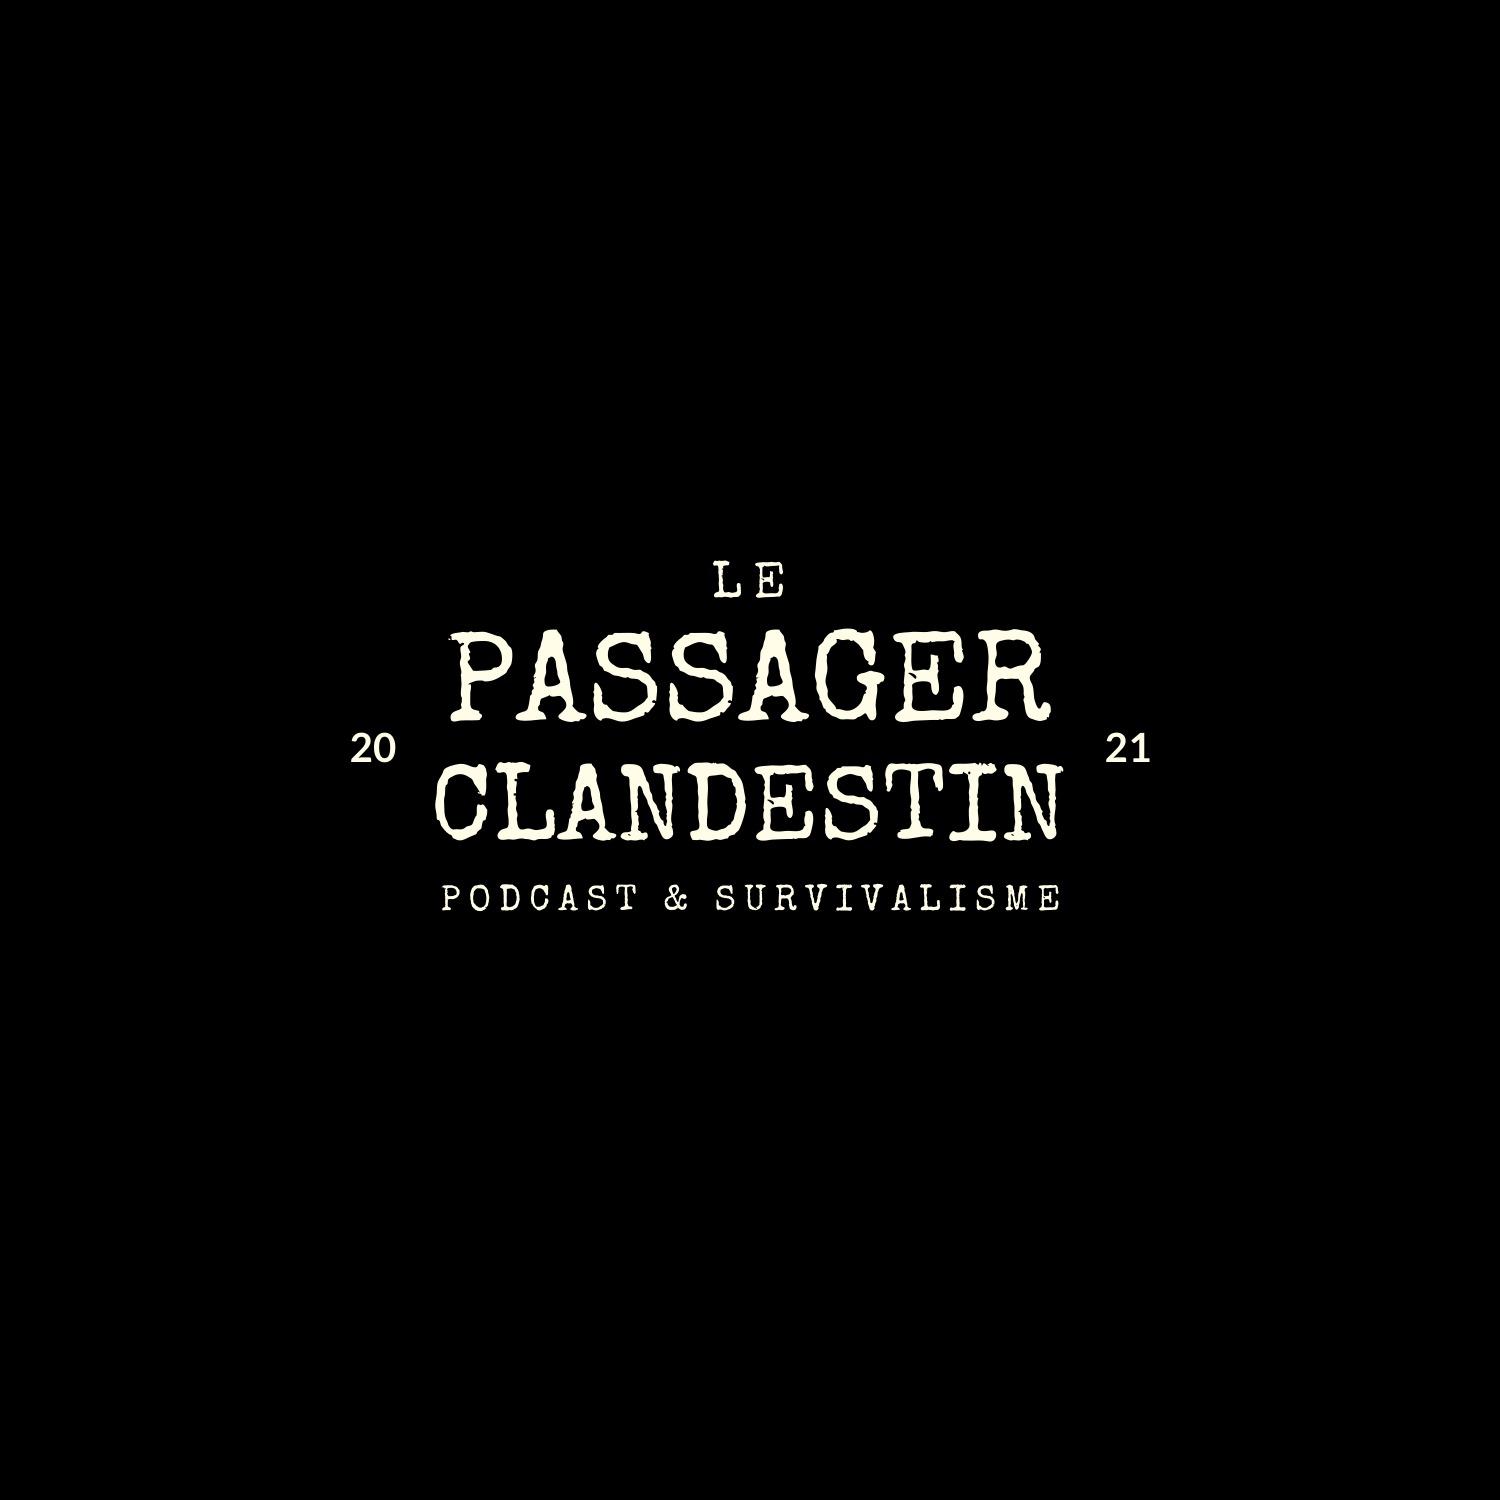 Le Passager Clandestin